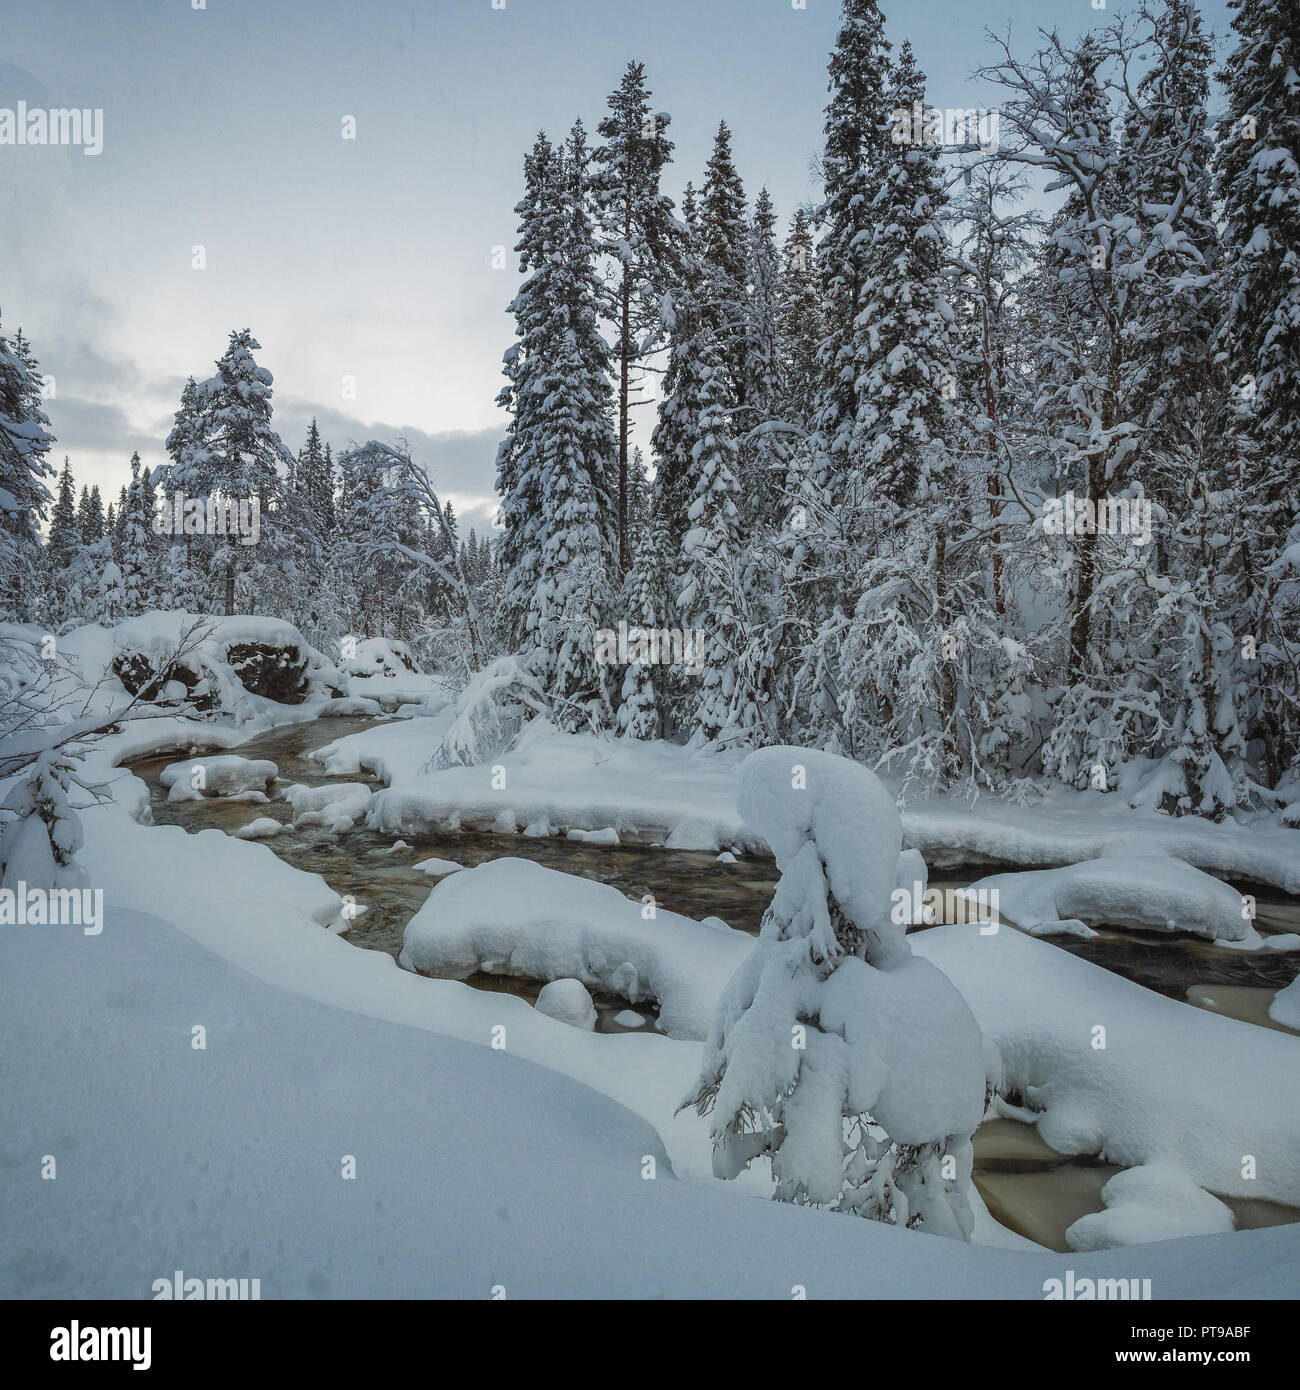 La couverture de neige fraîche sur près de la forêt boréale, l'EIES Grong, le nord de la Norvège. L'heure d'hiver fantastique. Banque D'Images